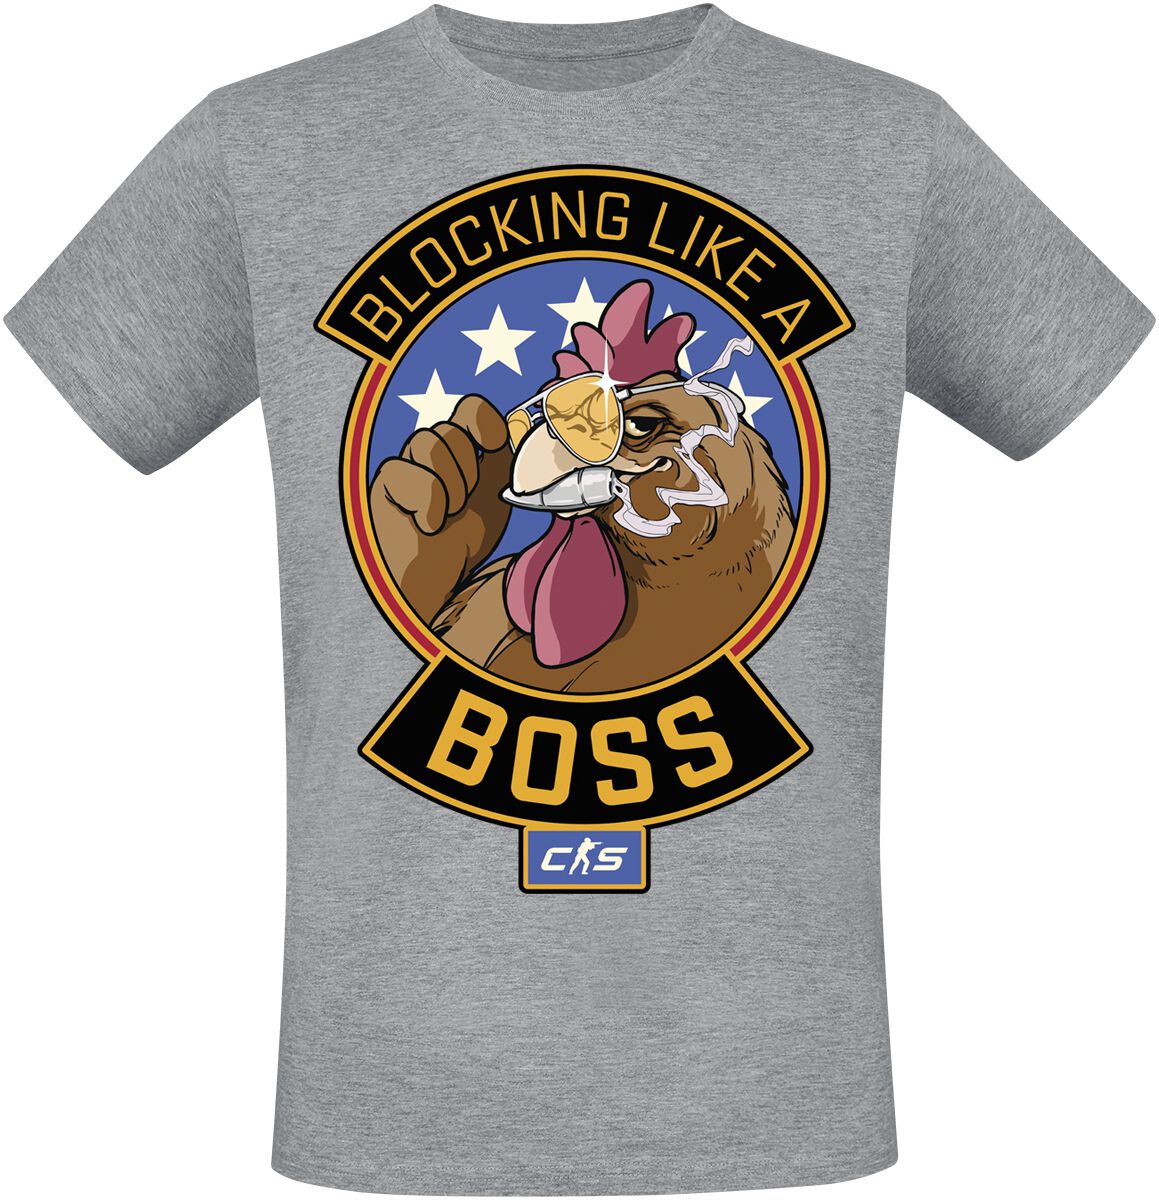 Counter-Strike - Gaming T-Shirt - 2 - Blocking Like A Boss - S bis XXL - für Männer - Größe S - grau meliert  - EMP exklusives Merchandise!